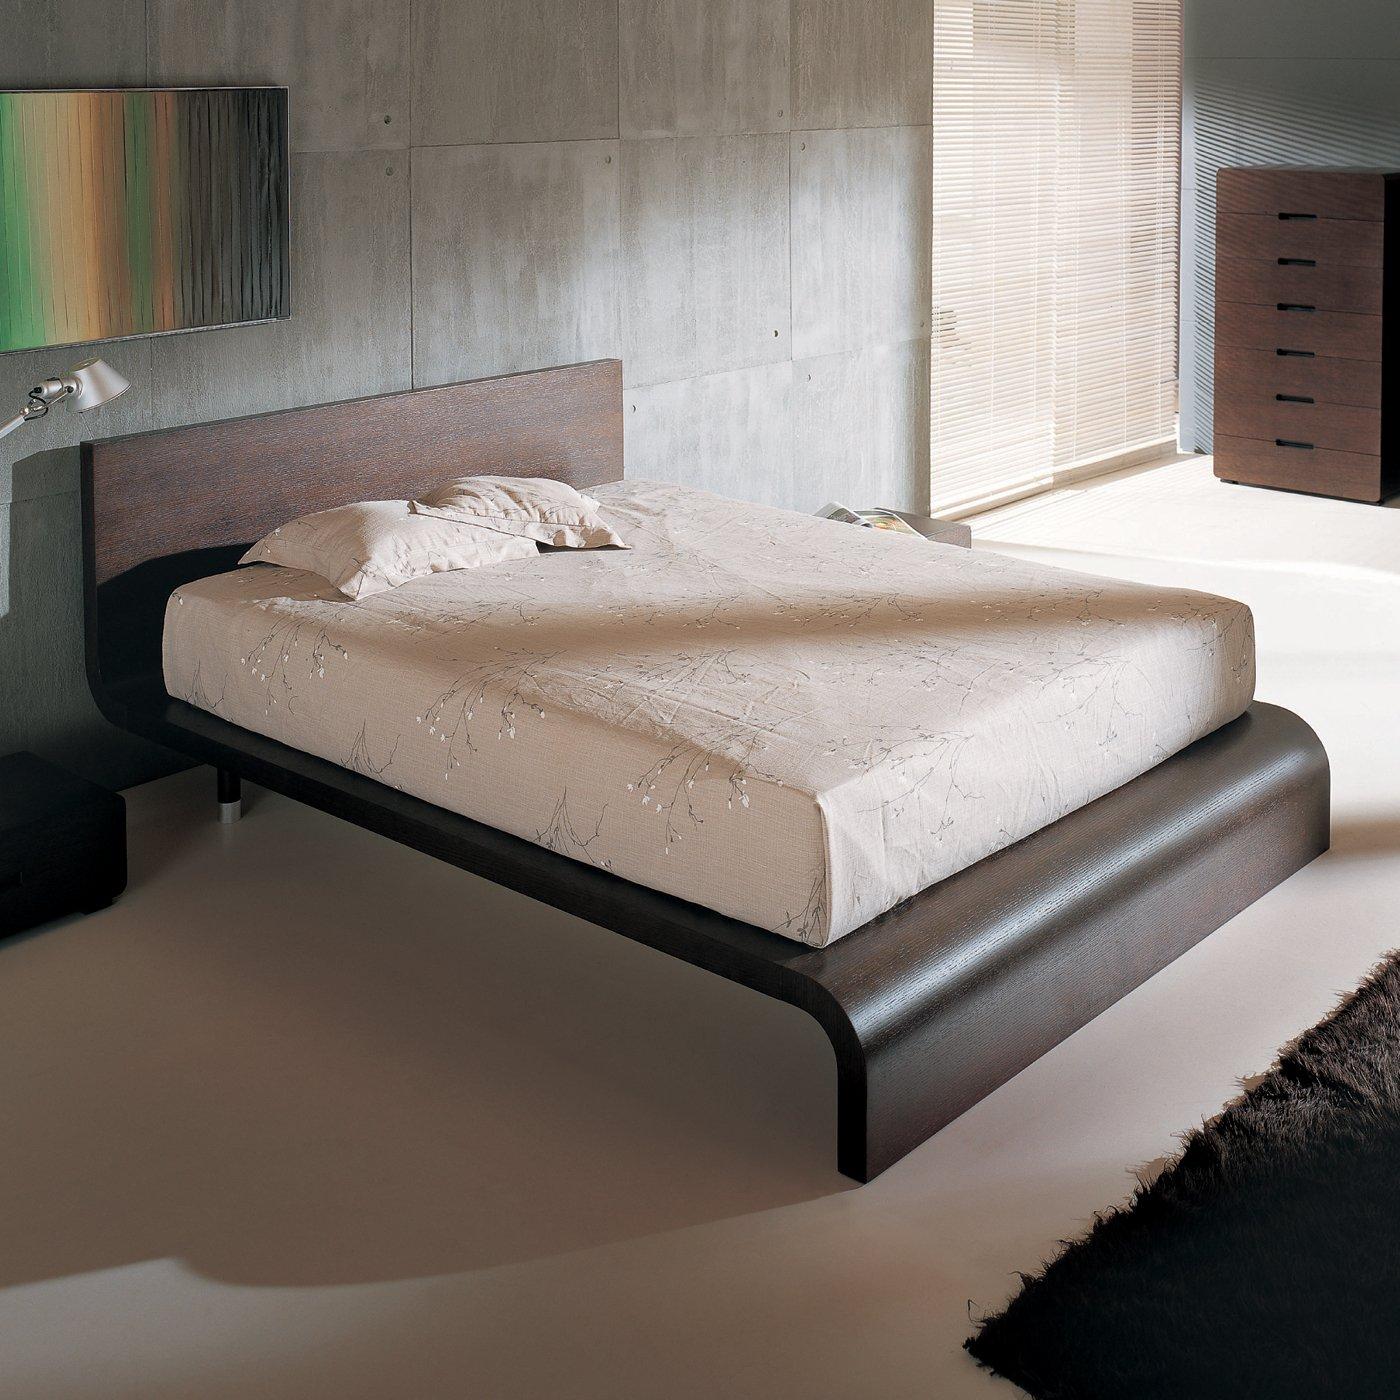 

    
BH Cosmo Wenge Queen Size Platform Bedroom Set 5pc
